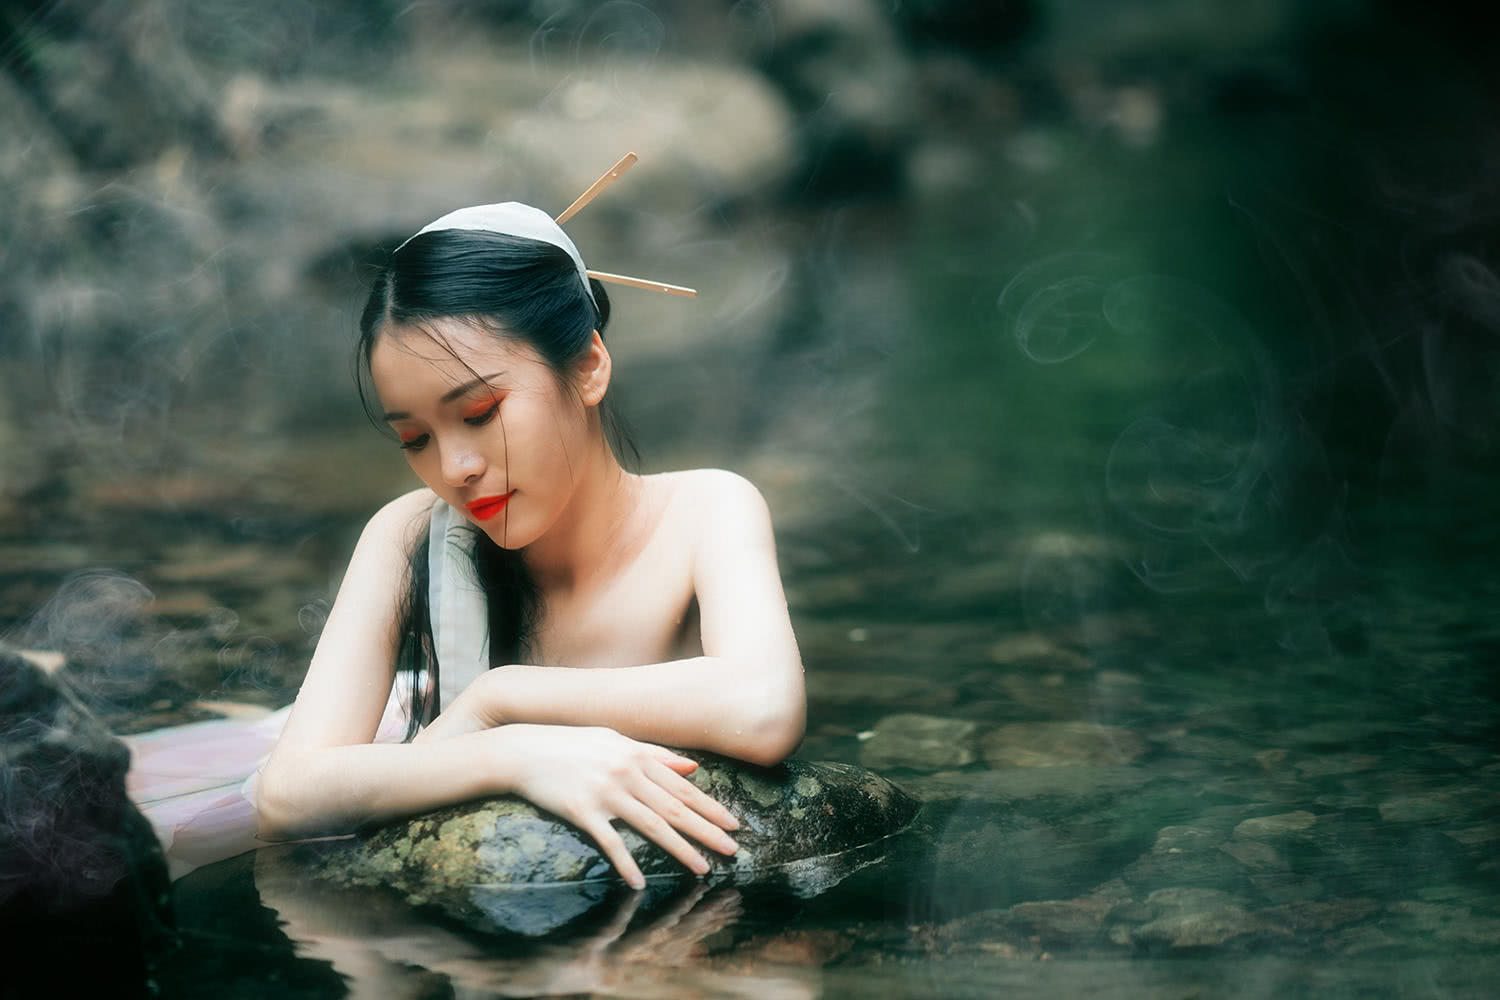 摄影师拍下美人出浴的瞬间,小姐姐好像《青蛇》中的王祖贤